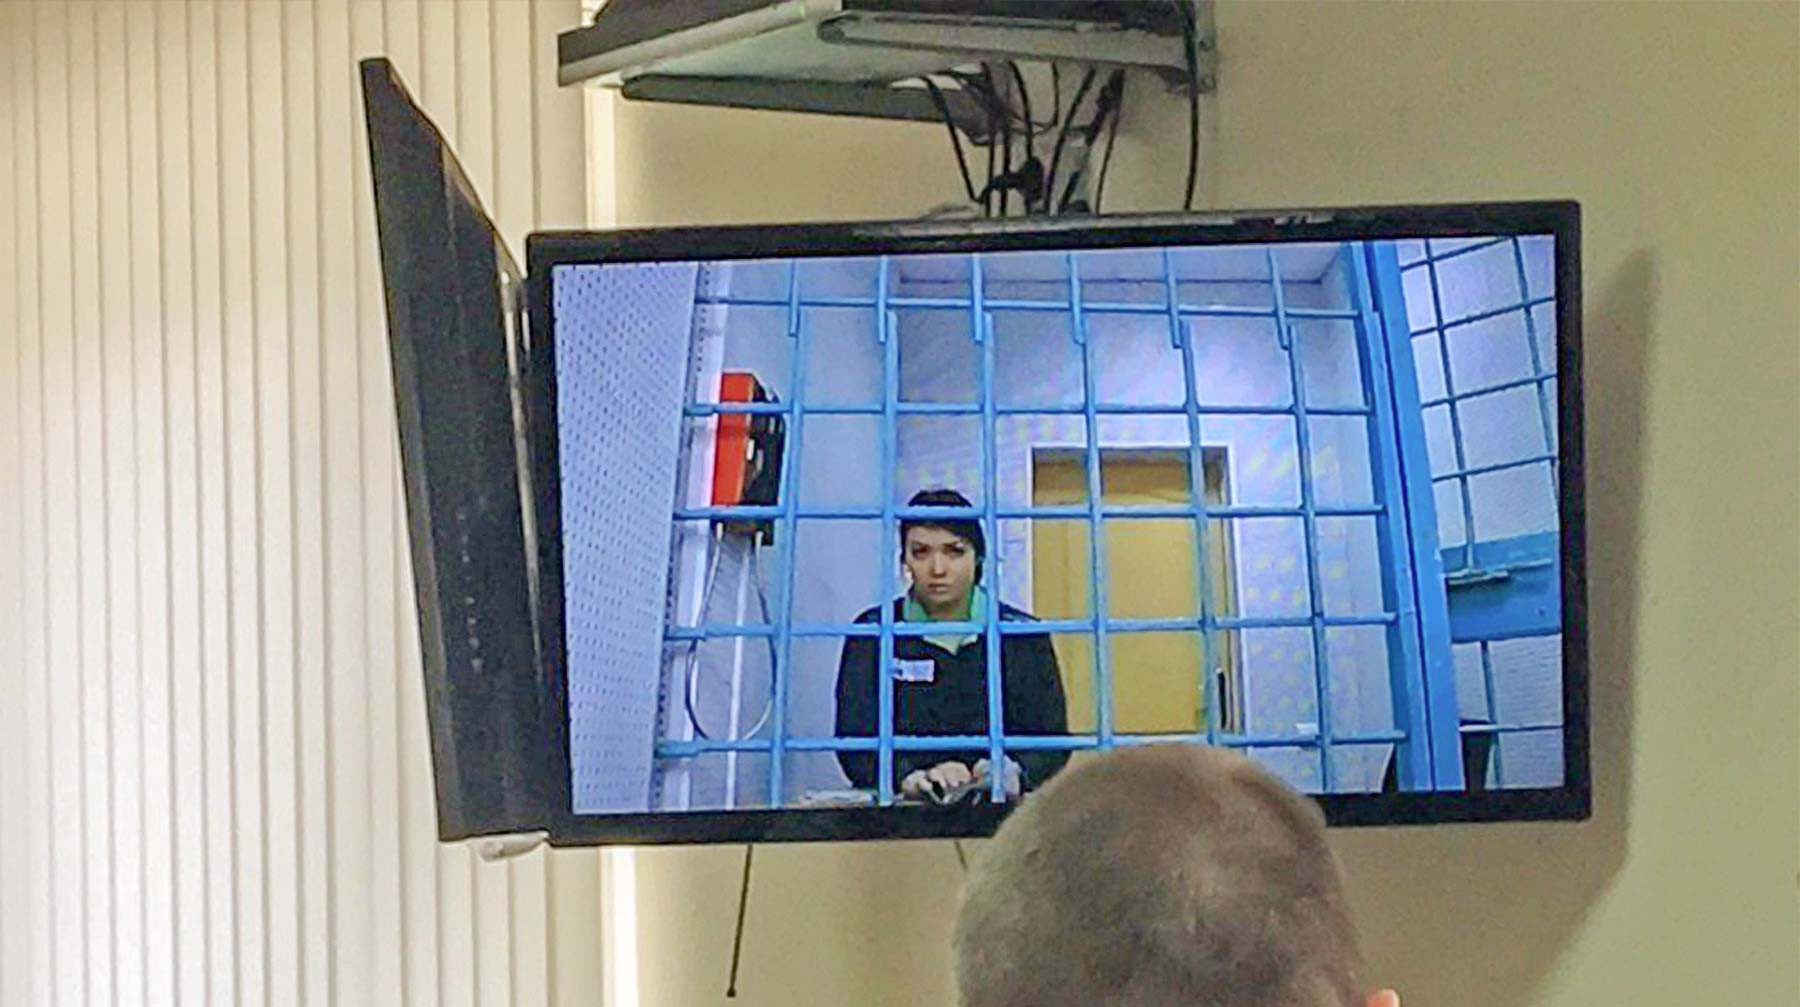 Dailystorm - Бежавшая в ИГ студентка Варвара Караулова освобождена судом